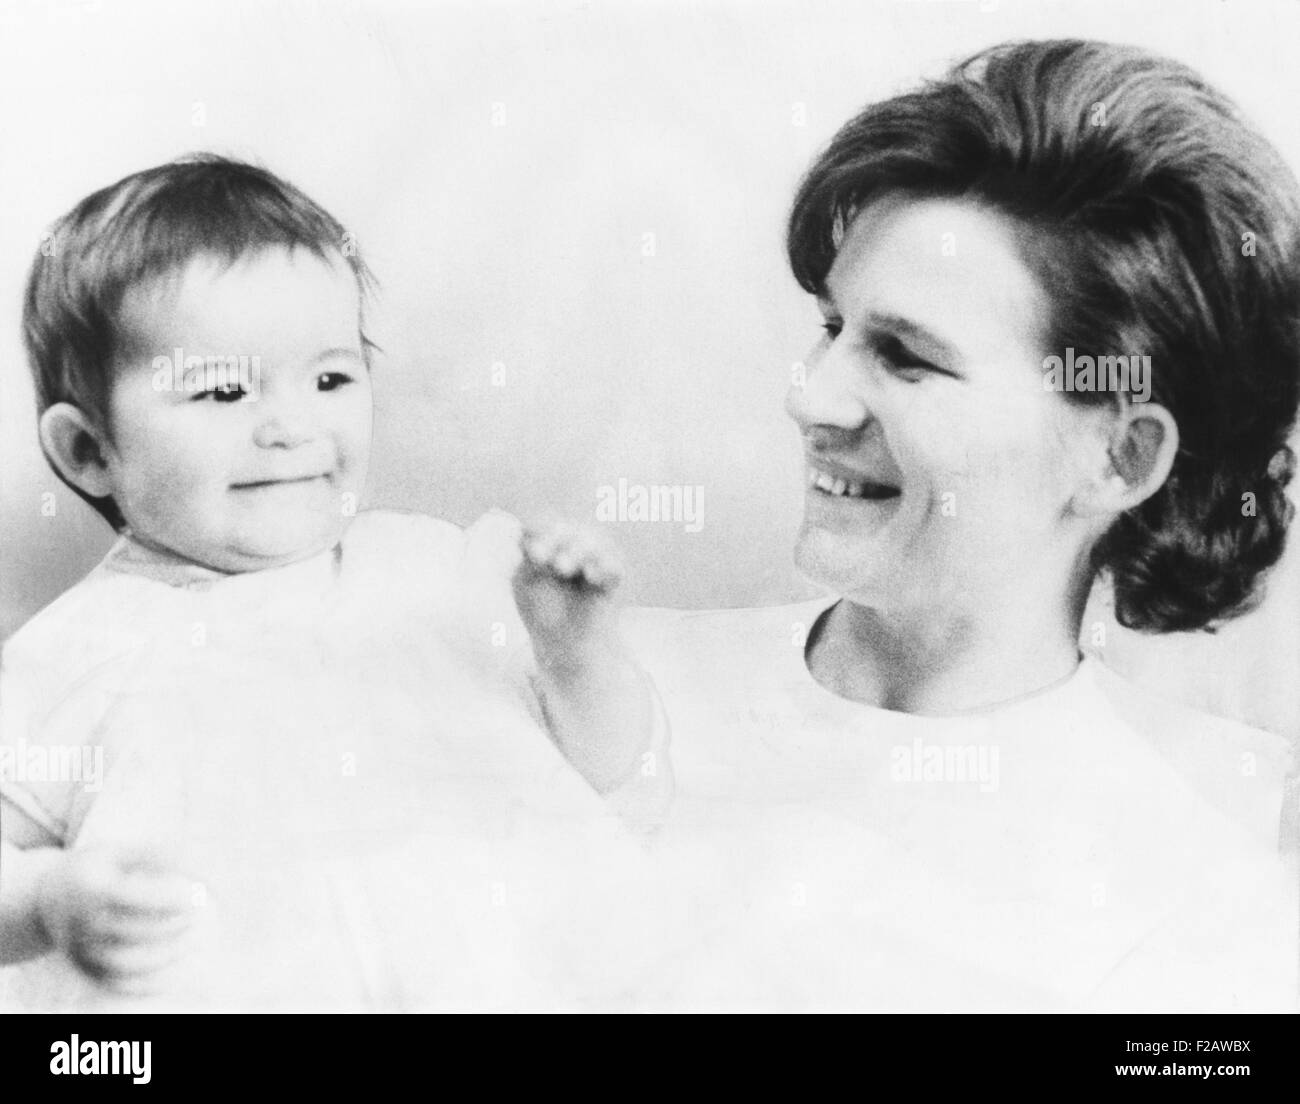 Russische Kosmonautin Valentina Nikolayeva-Tereshkova mit ihrer ein-jährige Tochter, Alyenushka. Valentina heiratete Kosmonaut Adrian Nikolayeva, kurz nachdem sie die erste Frau ins All geschickt wurde. Valentina wurde ein prominentes Mitglied der kommunistischen Partei der Sowjetunion, und blieb politisch aktiv, nach dem Zusammenbruch der UdSSR 1991. (CSU 2015 11 1422) Stockfoto